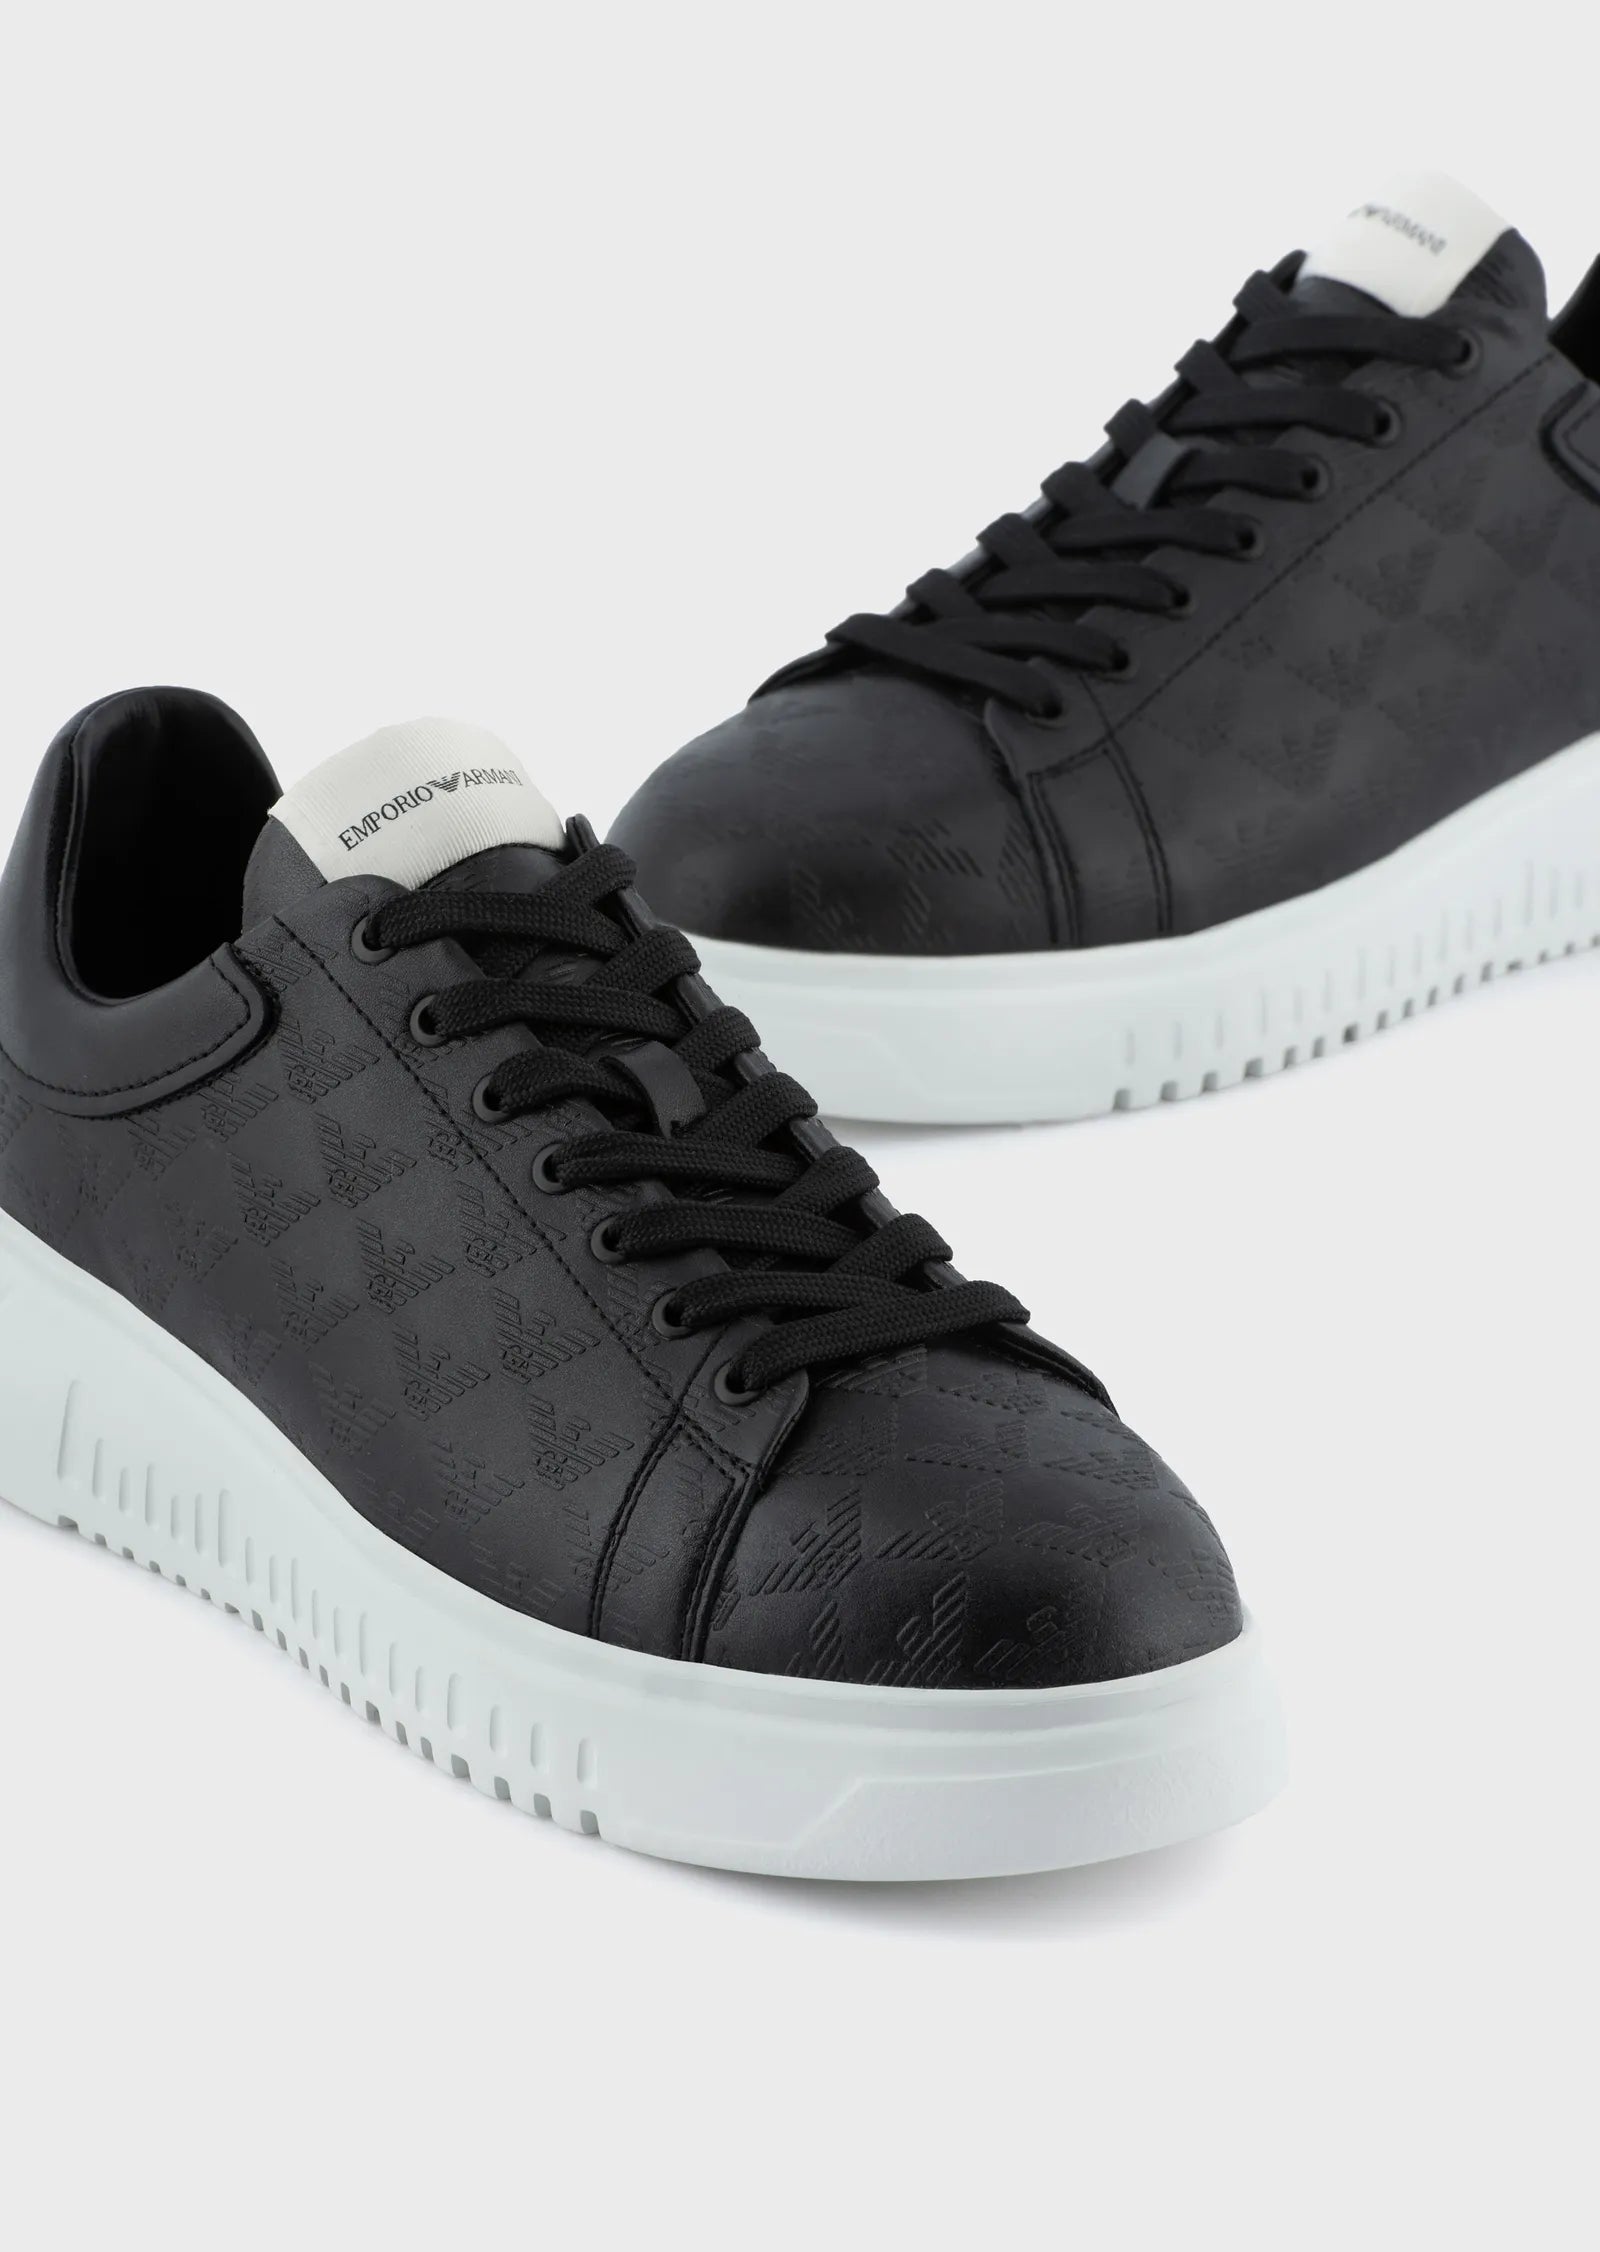 Emporio Armani Sneaker Leather Black